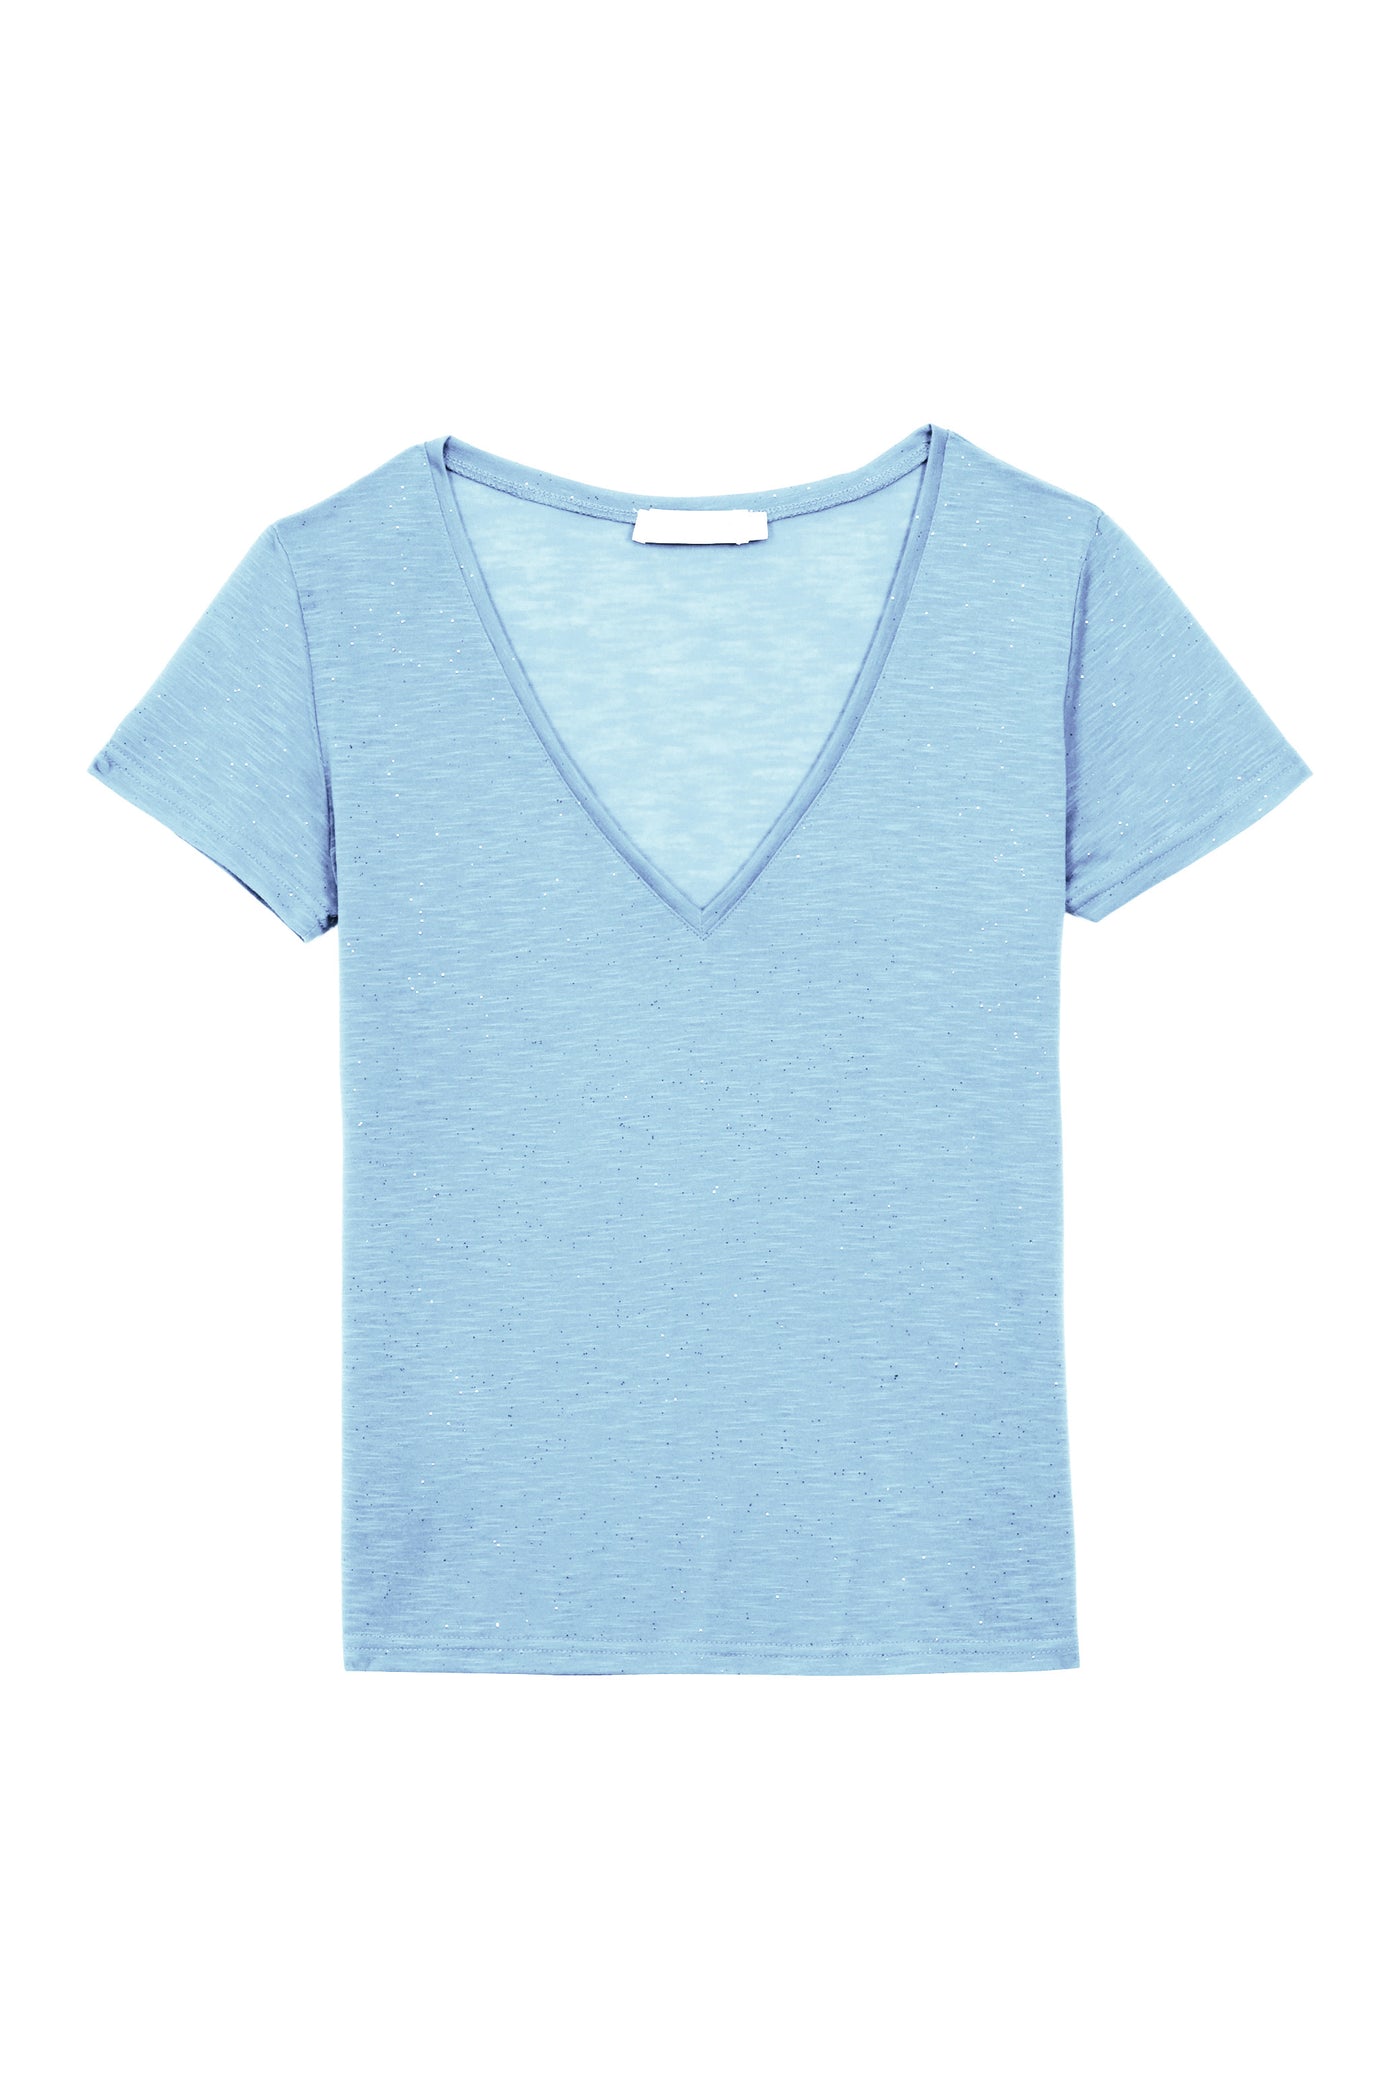 T-shirt Elvie - Bleu Ciel